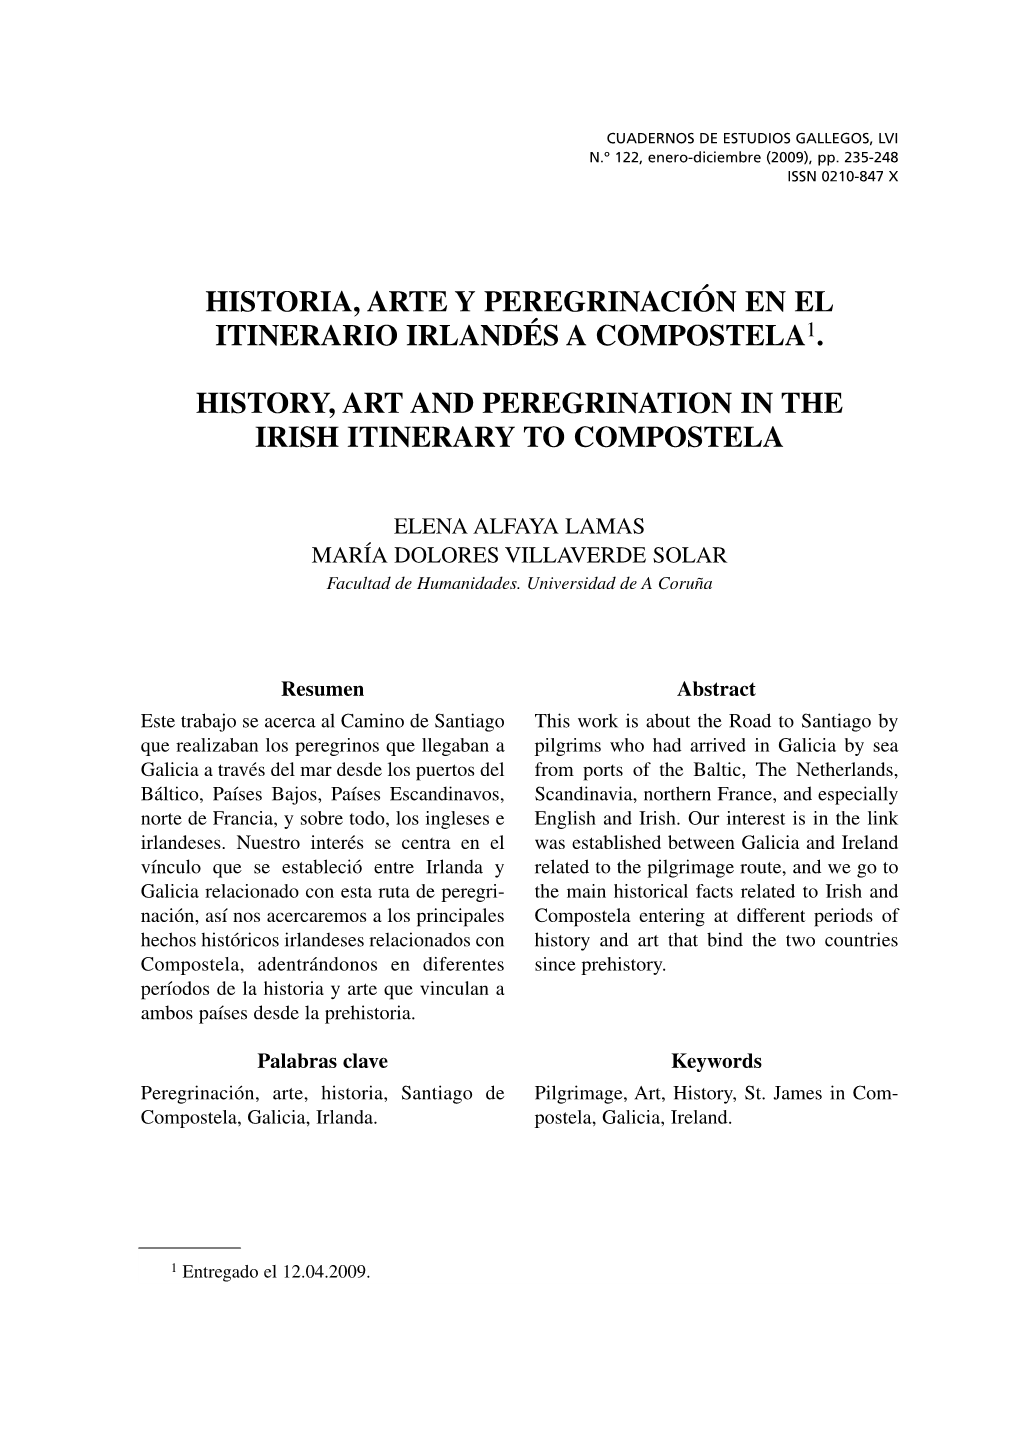 Historia, Arte Y Peregrinación En El Itinerario Irlandés a Compostela1